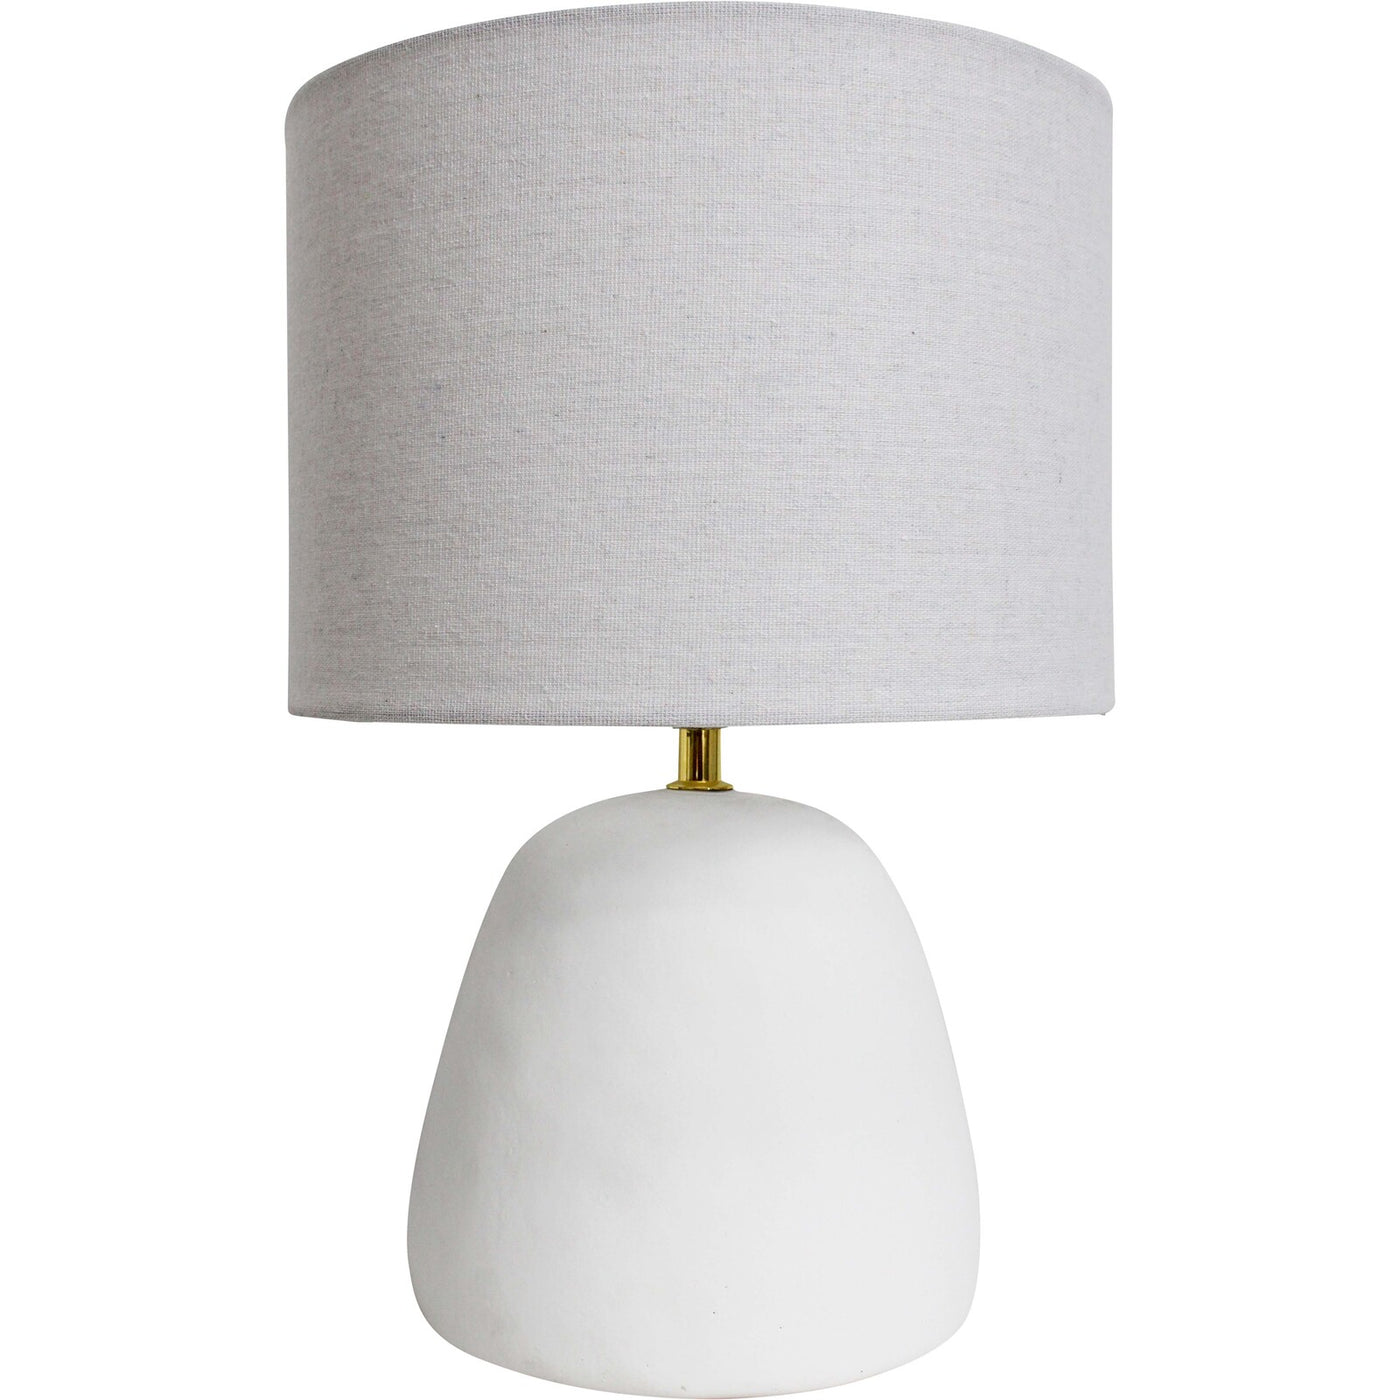 Lamp Pebble White 28x28x42Ccm